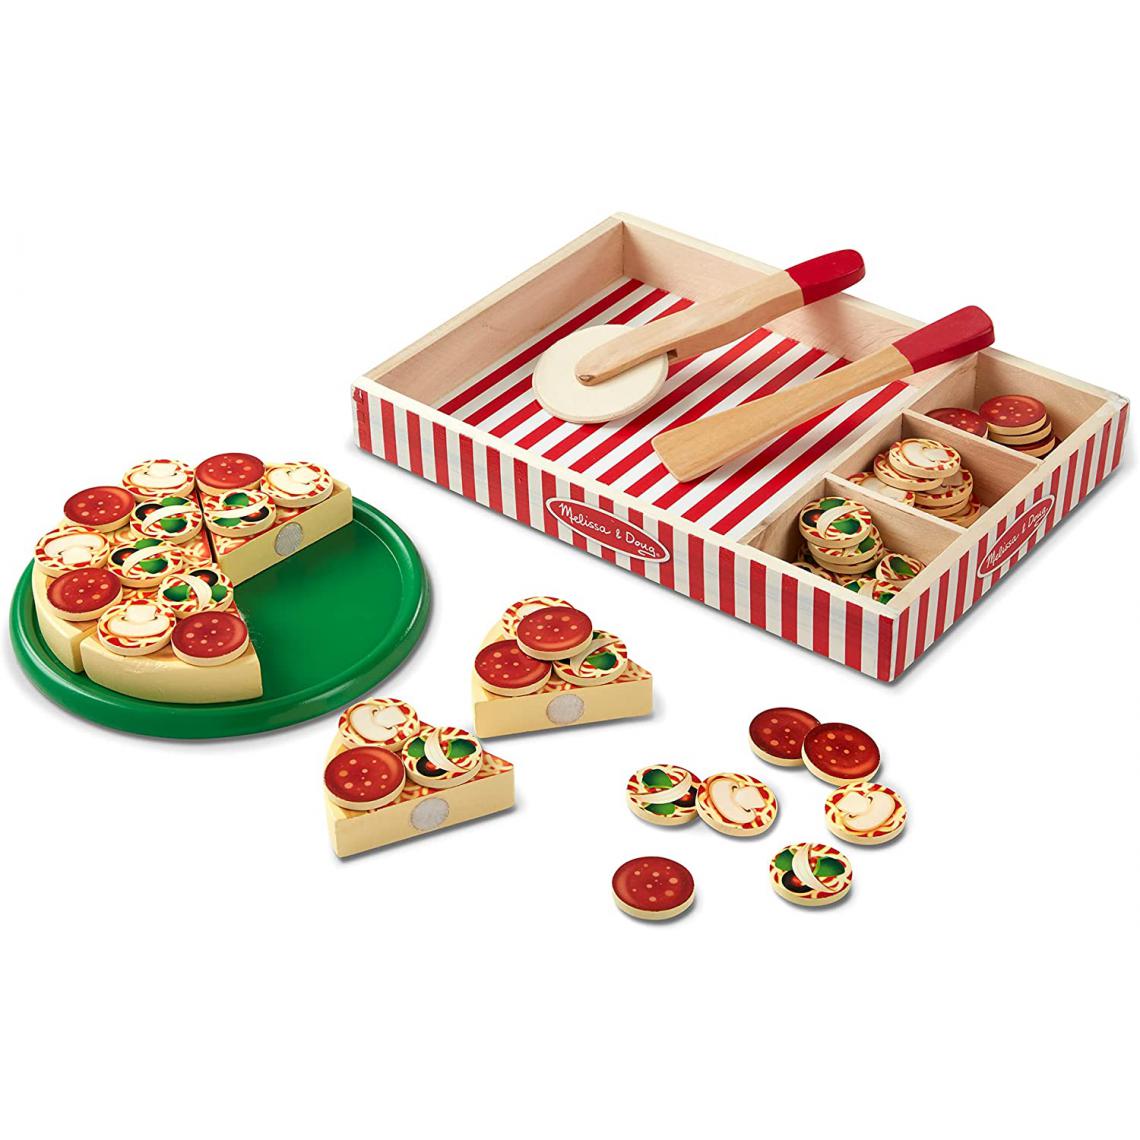 Small Foot - Six tranches de pizza tranchables en bois et plus de 50 garnitures - Cuisine et ménage